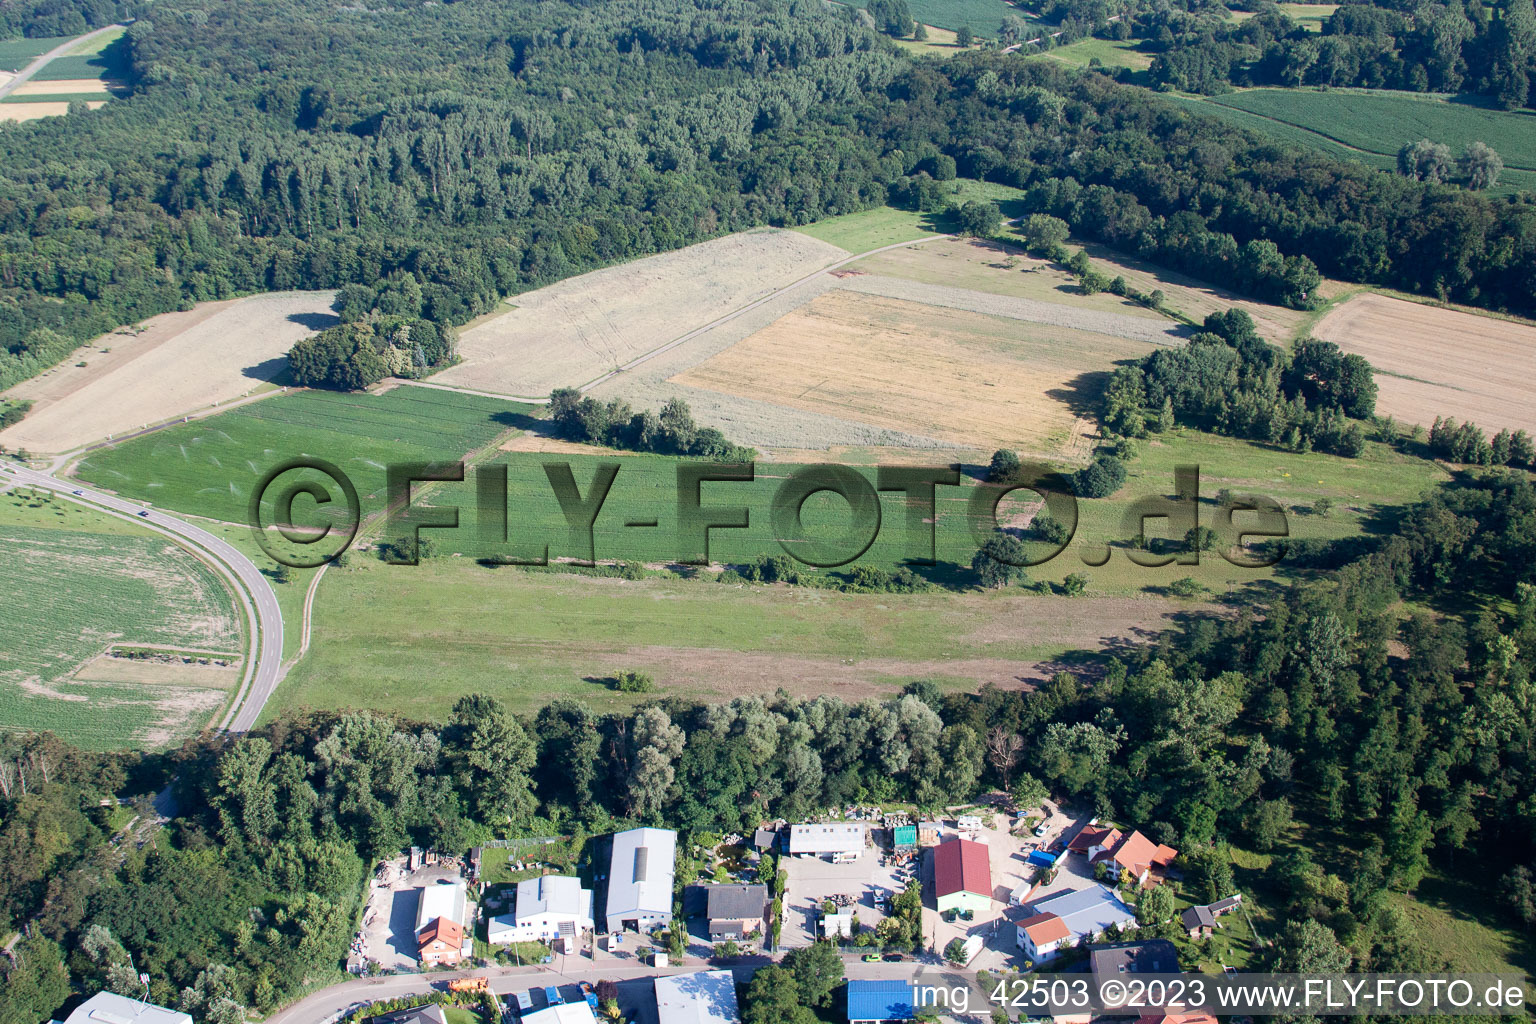 Vue aérienne de Fosse d'argile à Jockgrim dans le département Rhénanie-Palatinat, Allemagne